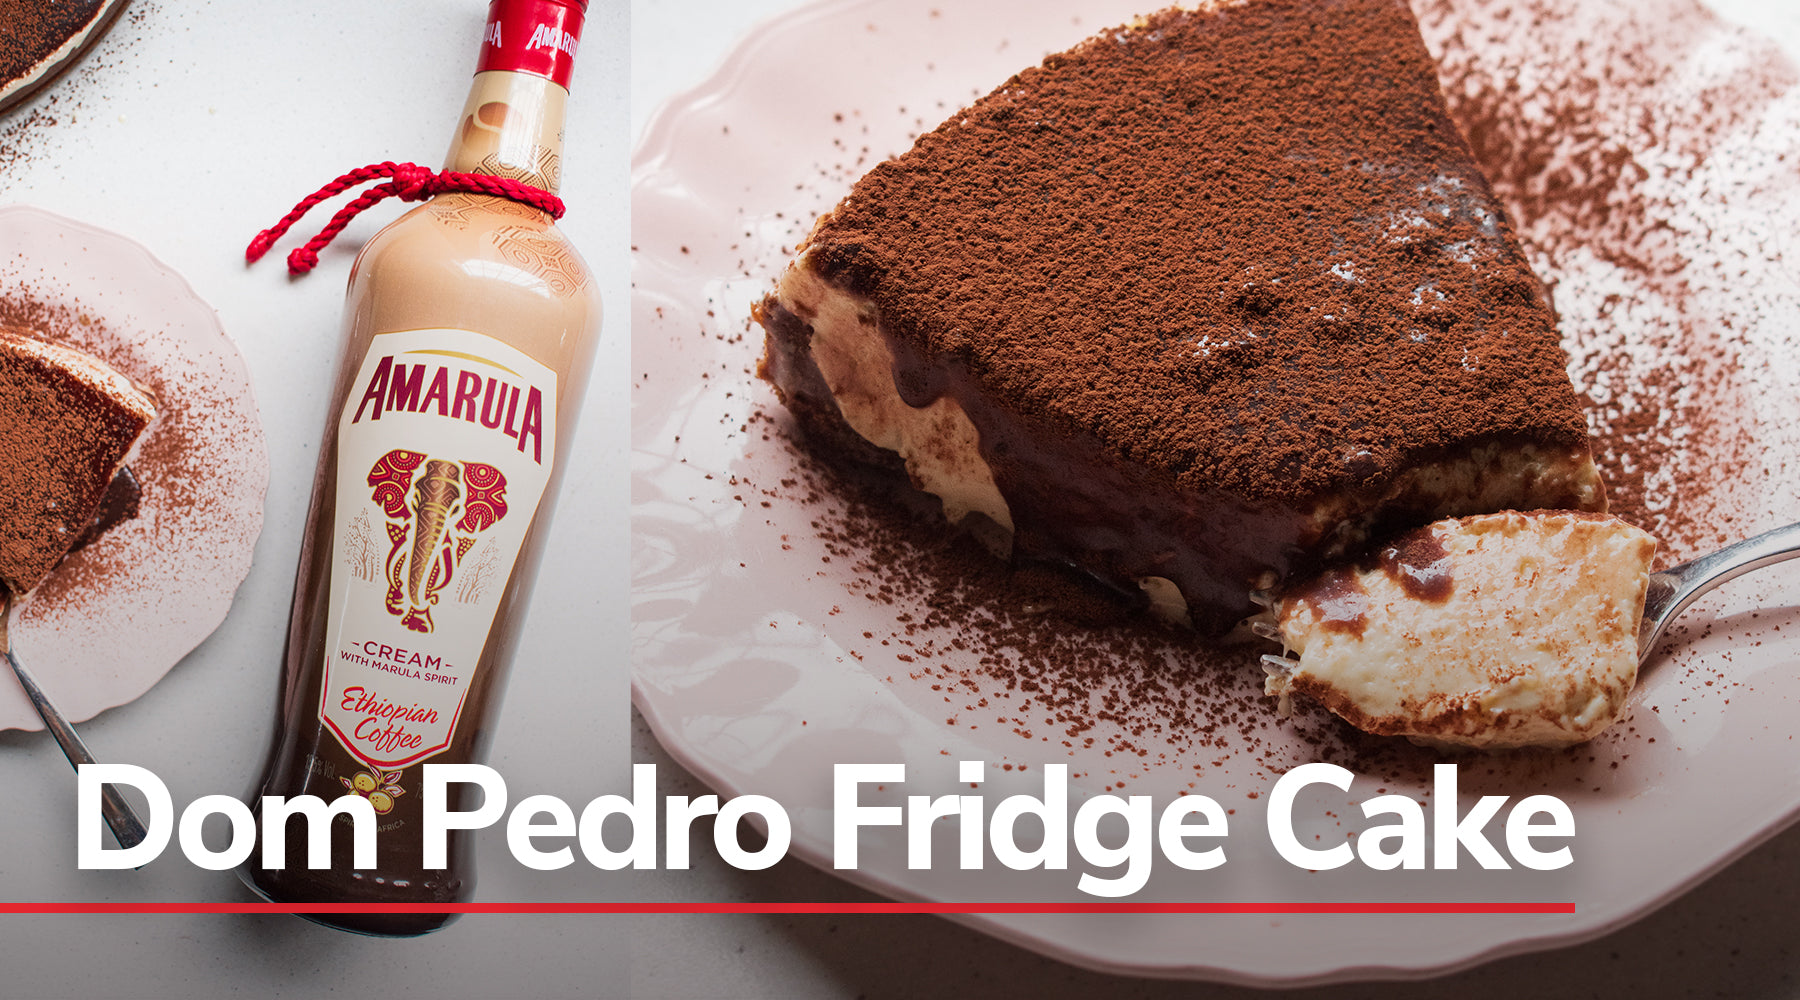 Dom Pedro Fridge Cake with Amarula